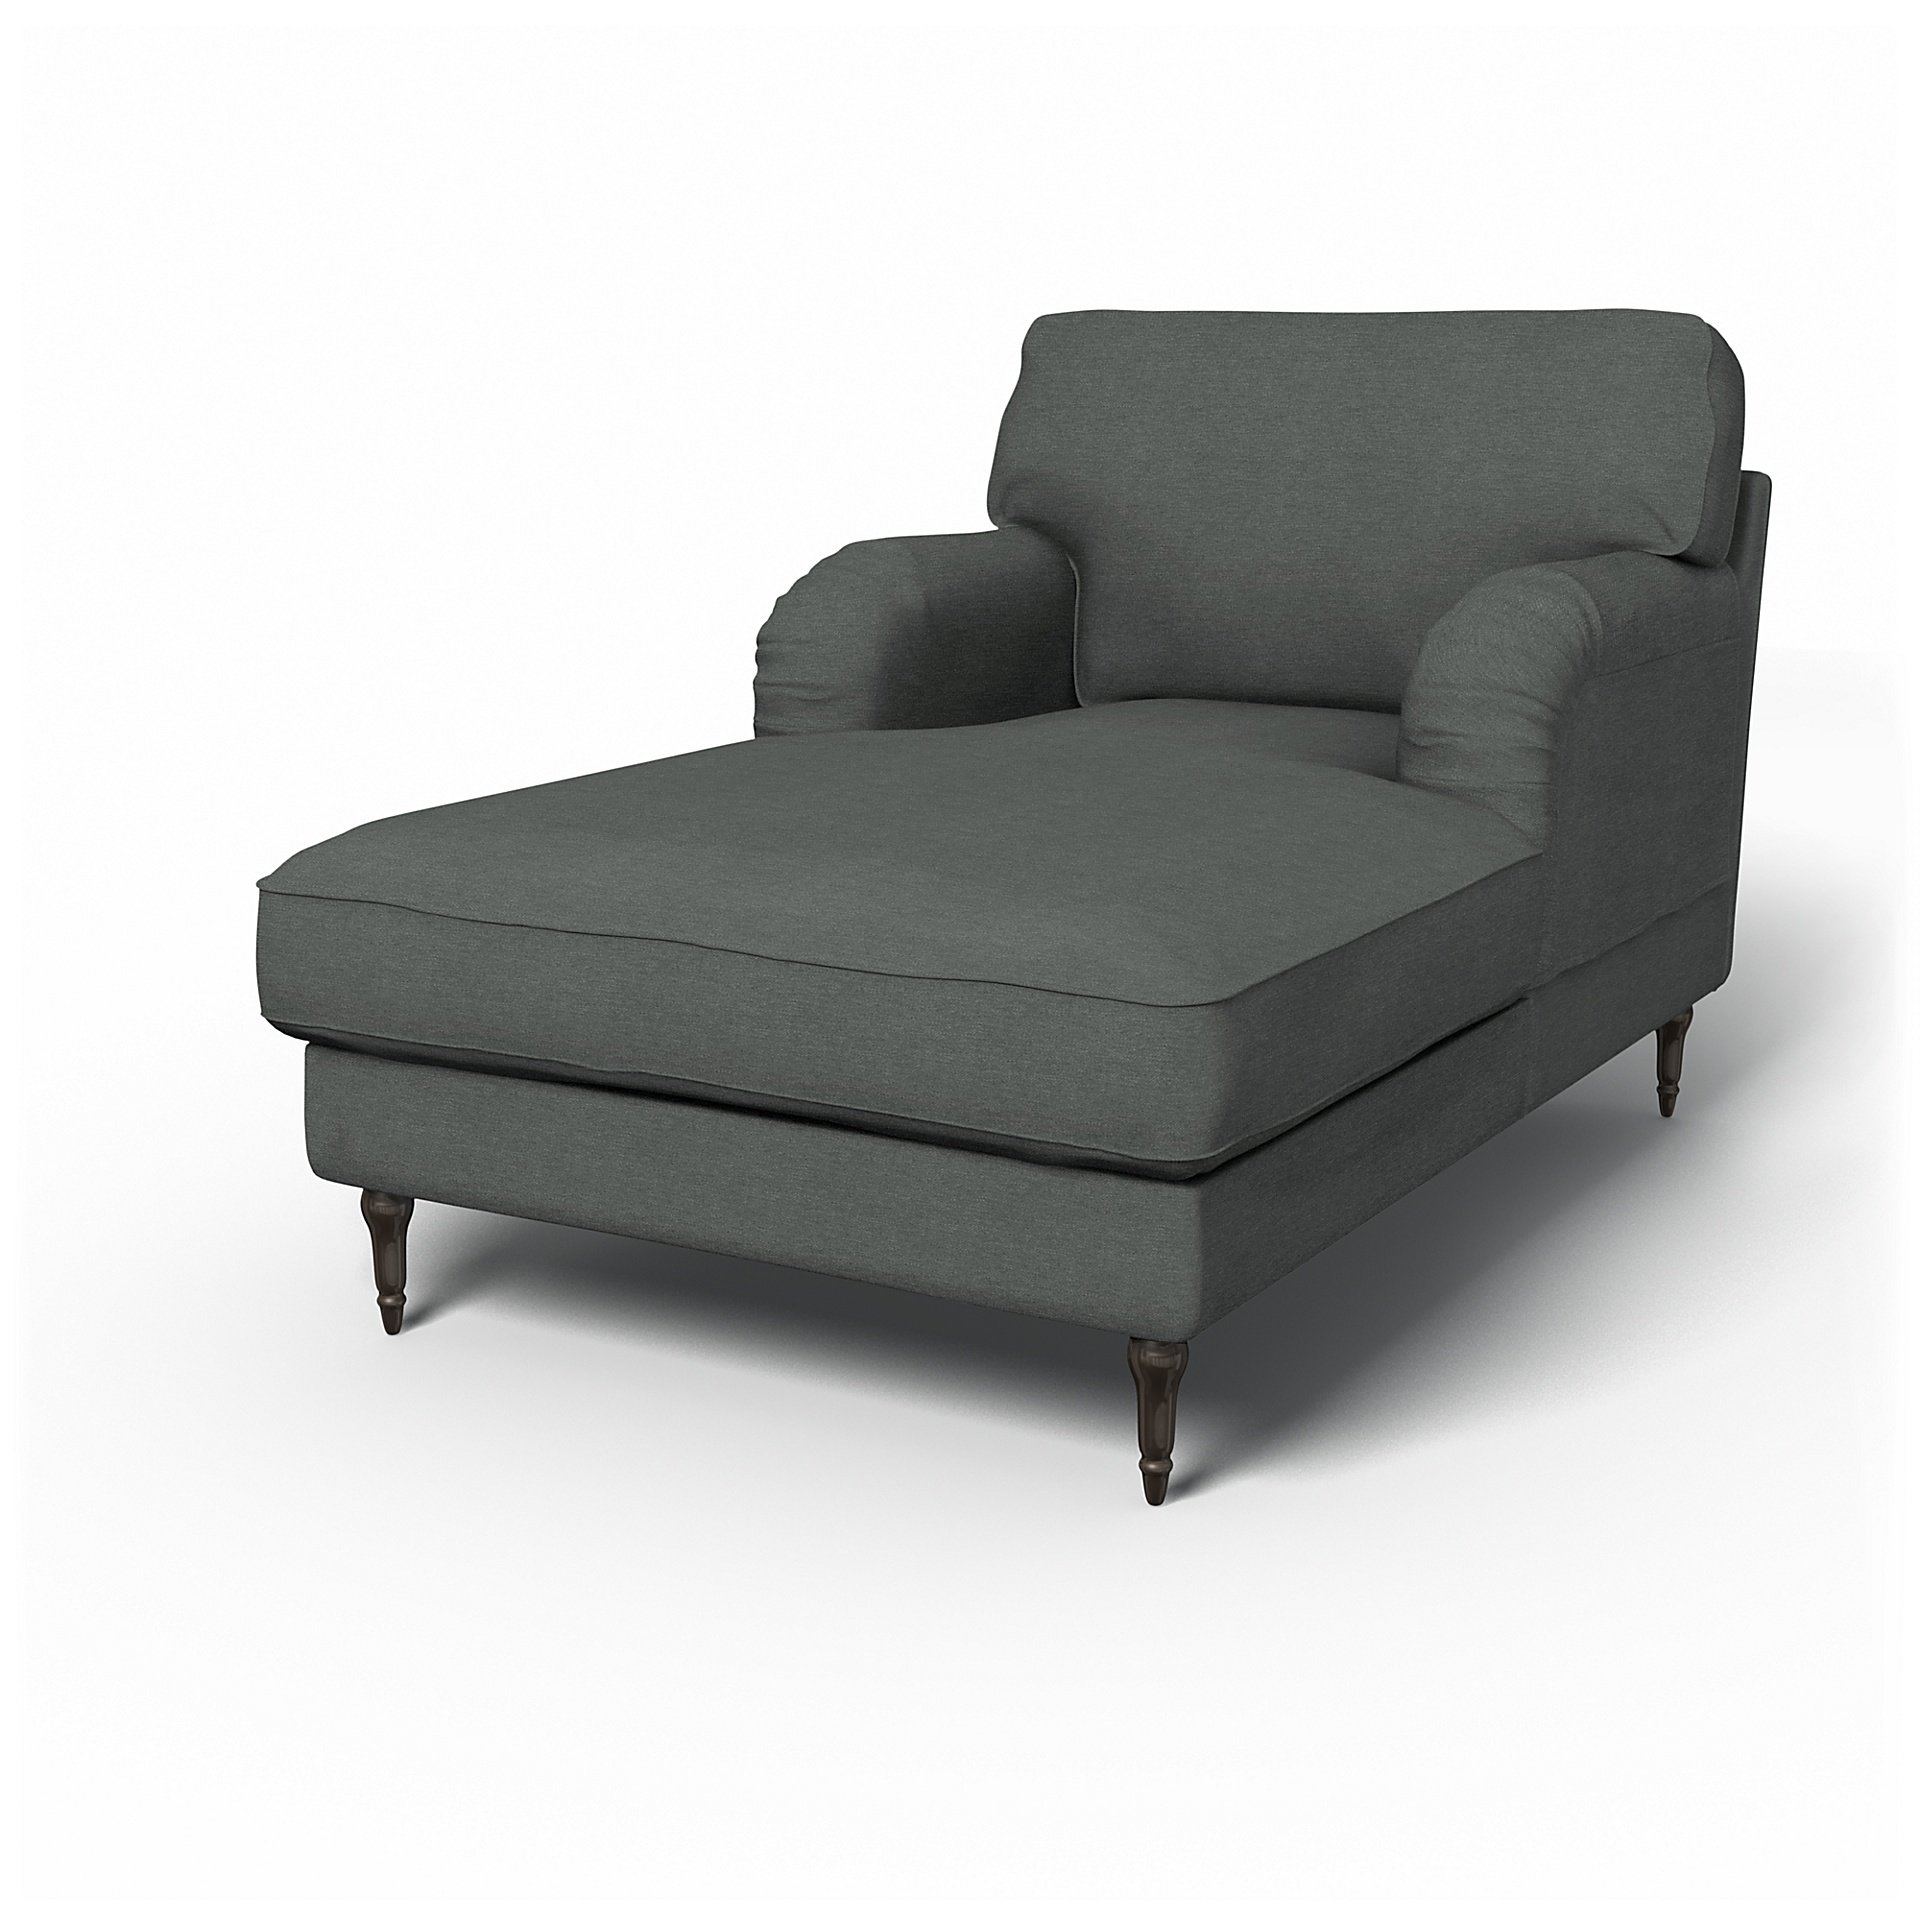 IKEA - Stocksund Chaise Longue Cover, Laurel, Boucle & Texture - Bemz